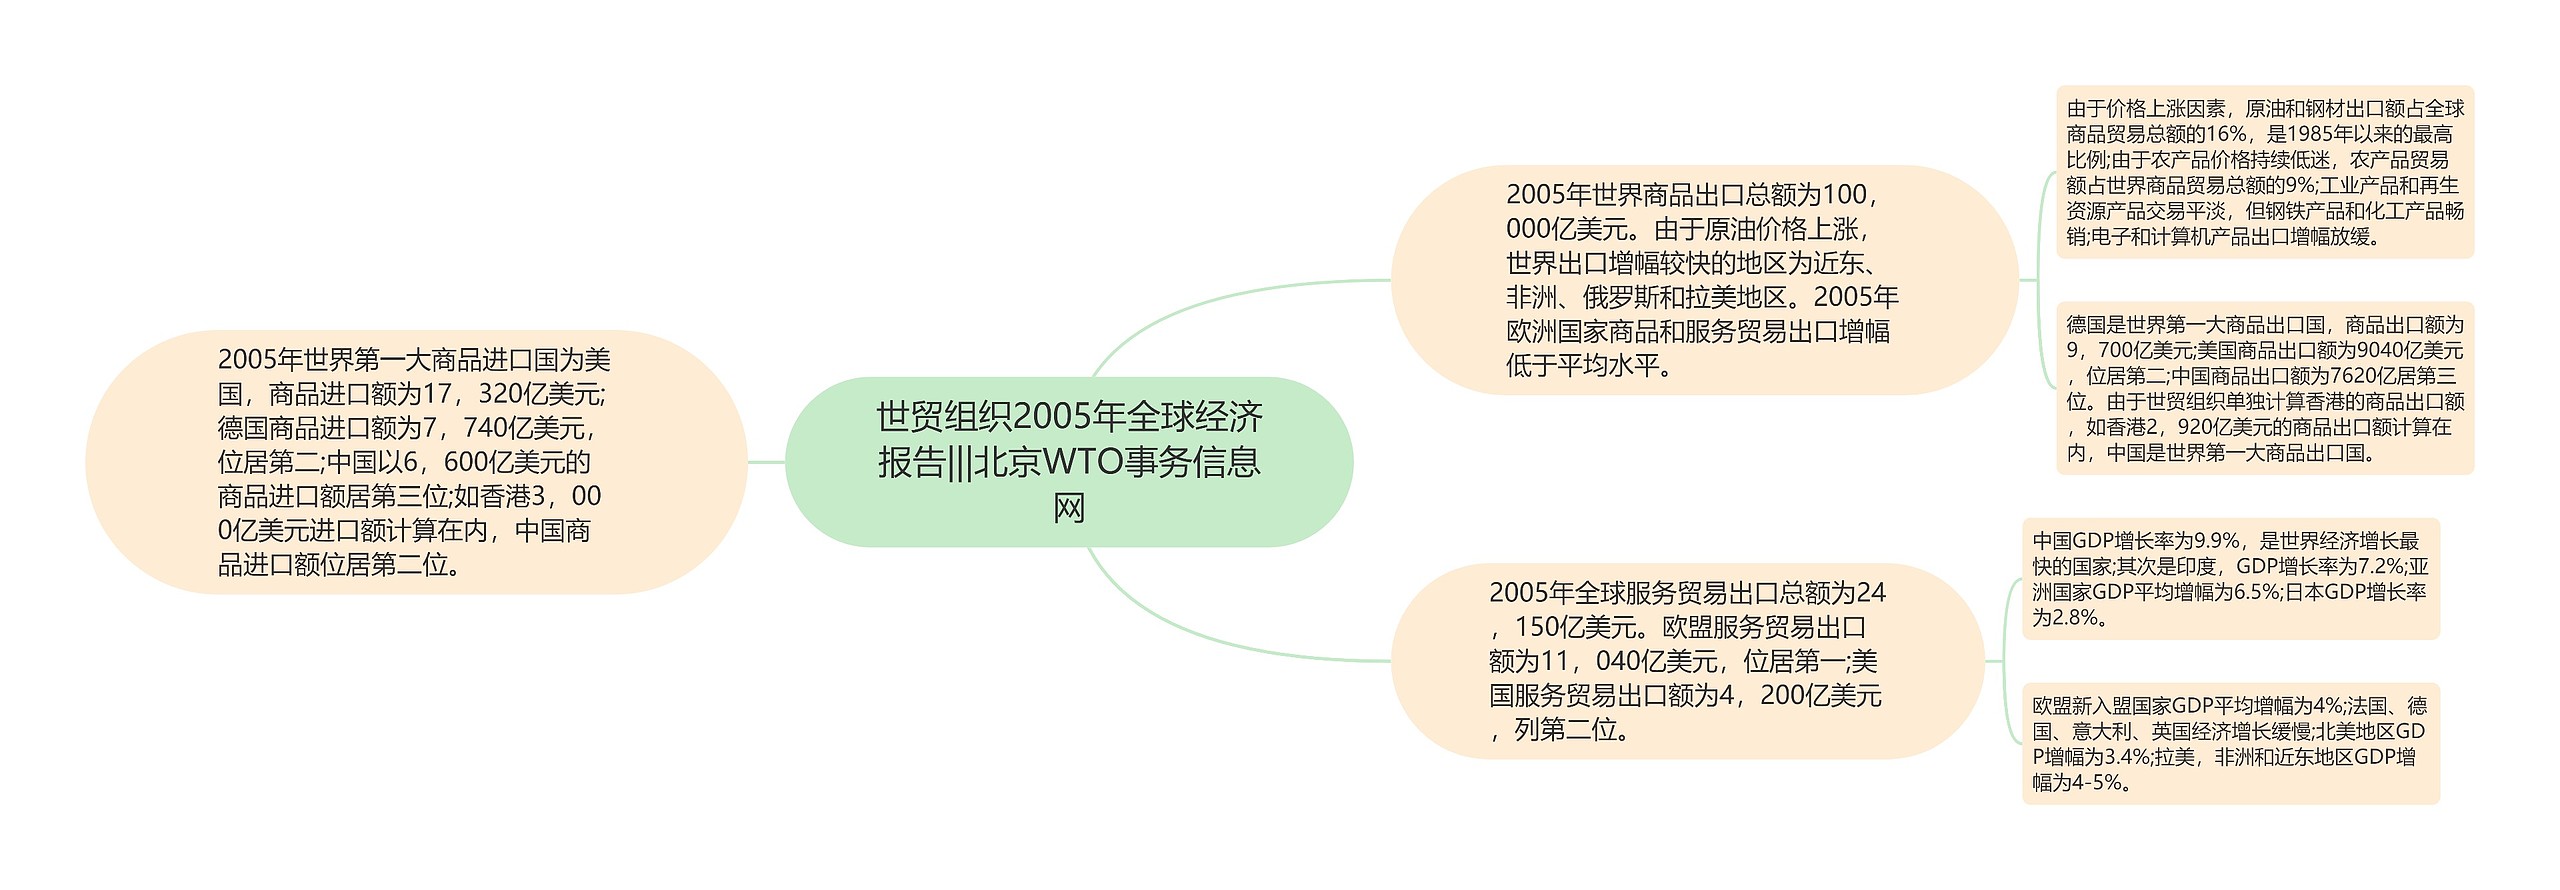 世贸组织2005年全球经济报告|||北京WTO事务信息网思维导图